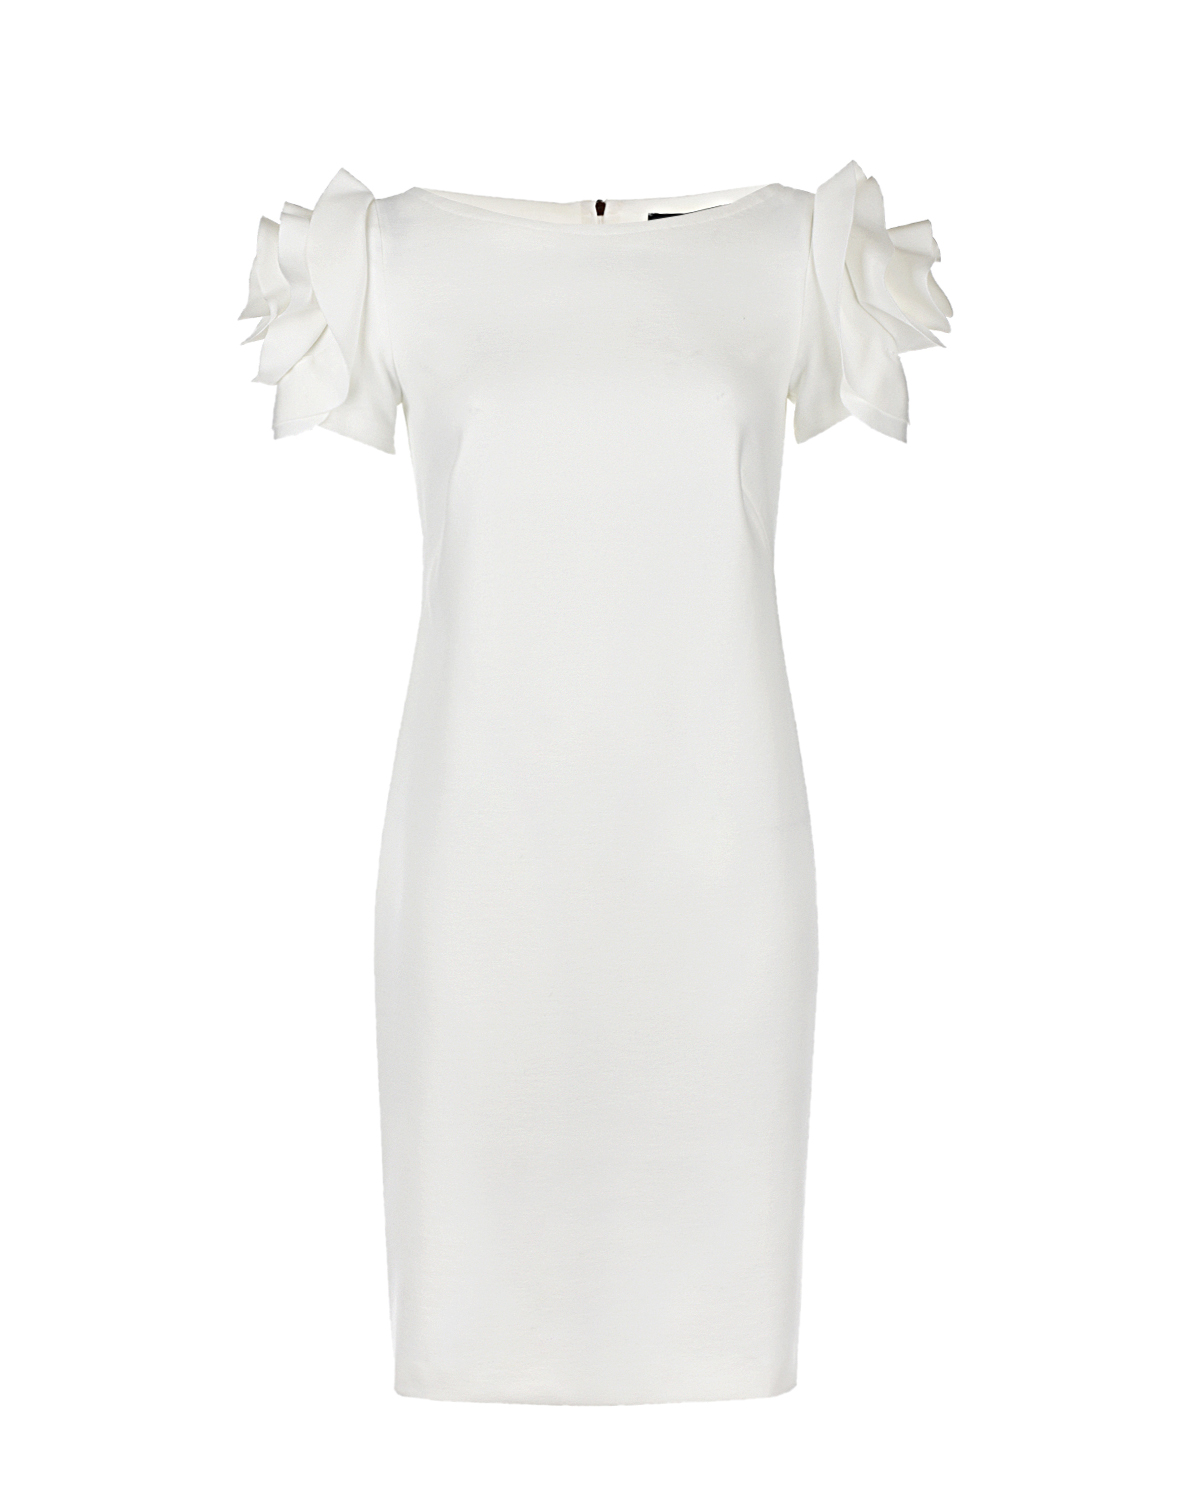 Кремовое платье-футляр для беременных Capri dress Pietro Brunelli, размер 38, цвет кремовый